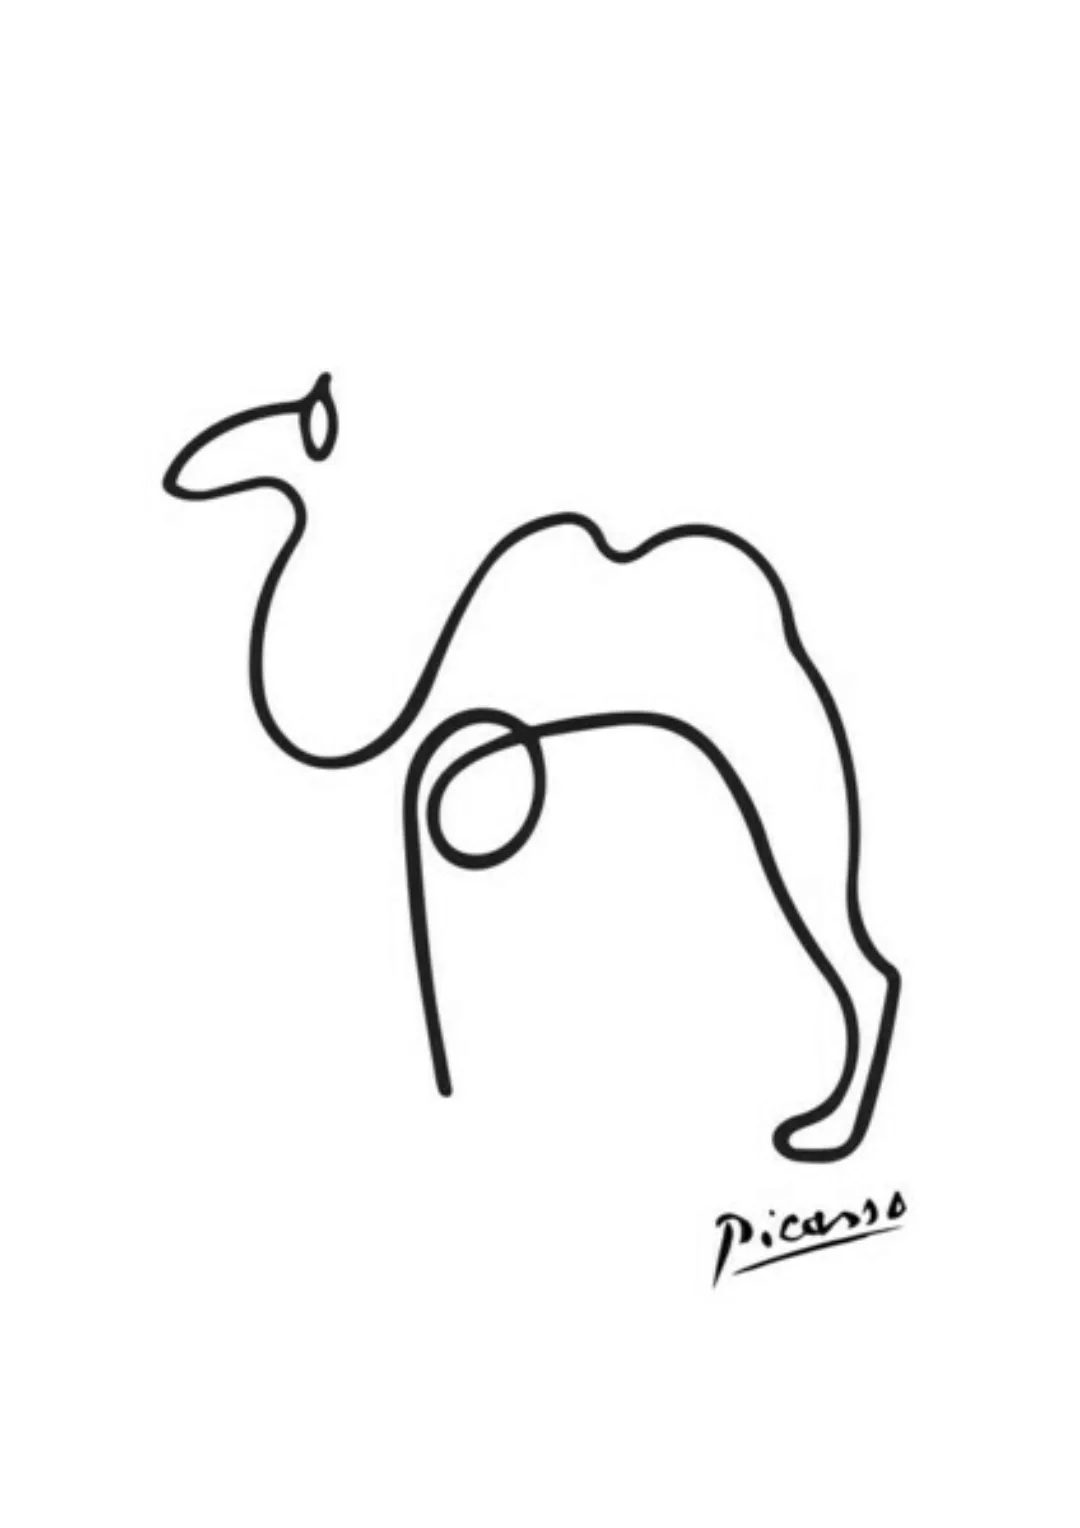 Poster / Leinwandbild - Picasso Kamel günstig online kaufen